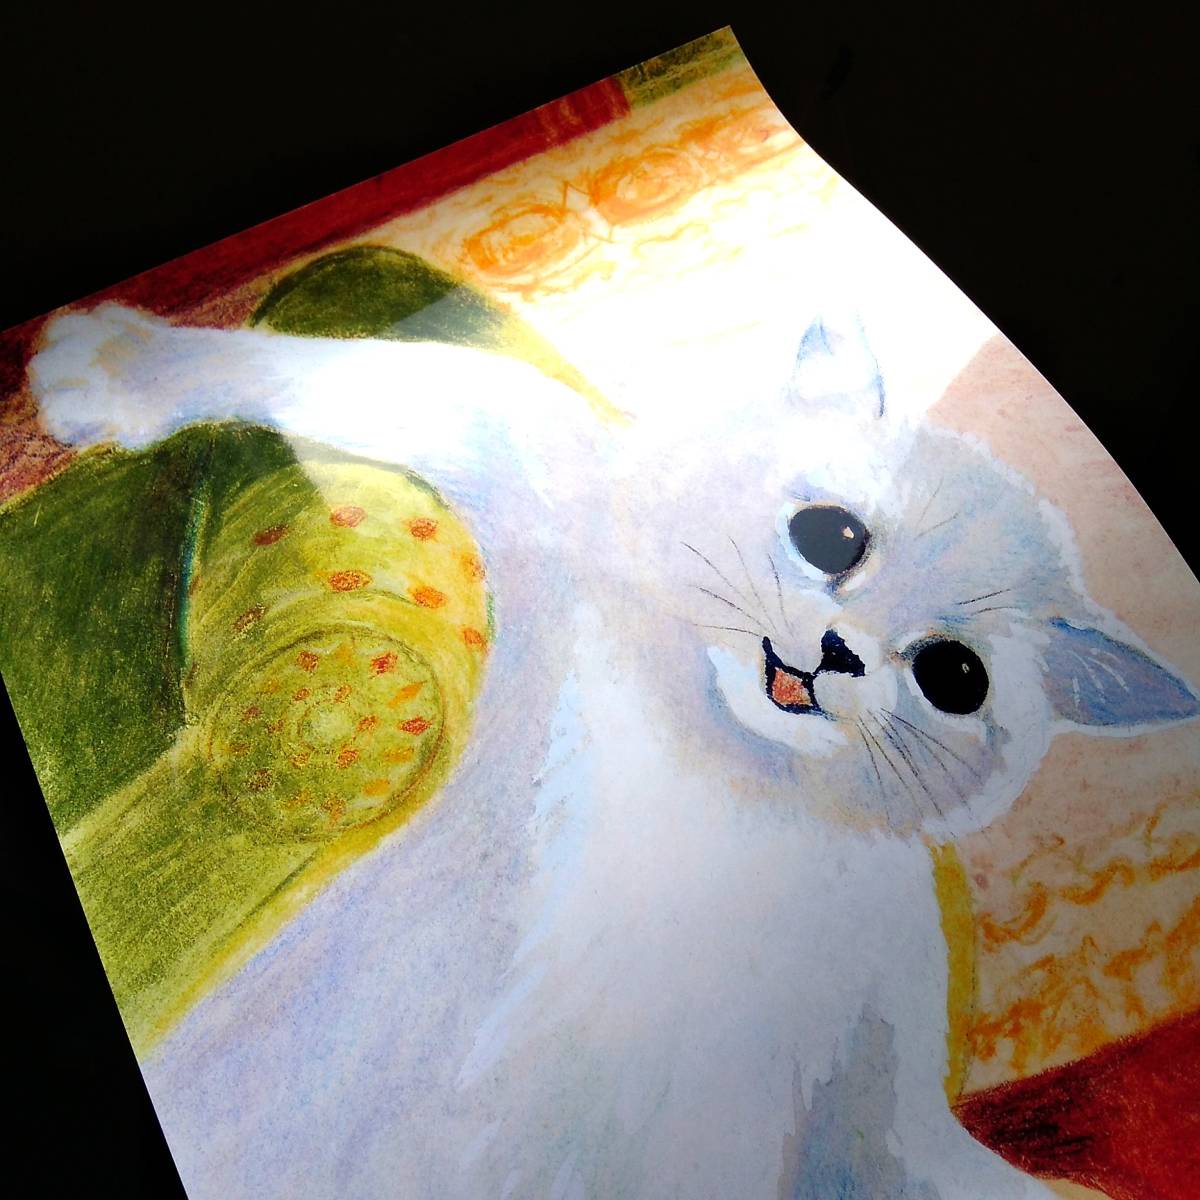 ルイス・ウェイン『しばしの休憩』 絵画 アート 光沢 ポスター A3 バー カフェ クラシック レトロ インテリア 白猫 ネコ かわいい おしゃれ_画像2